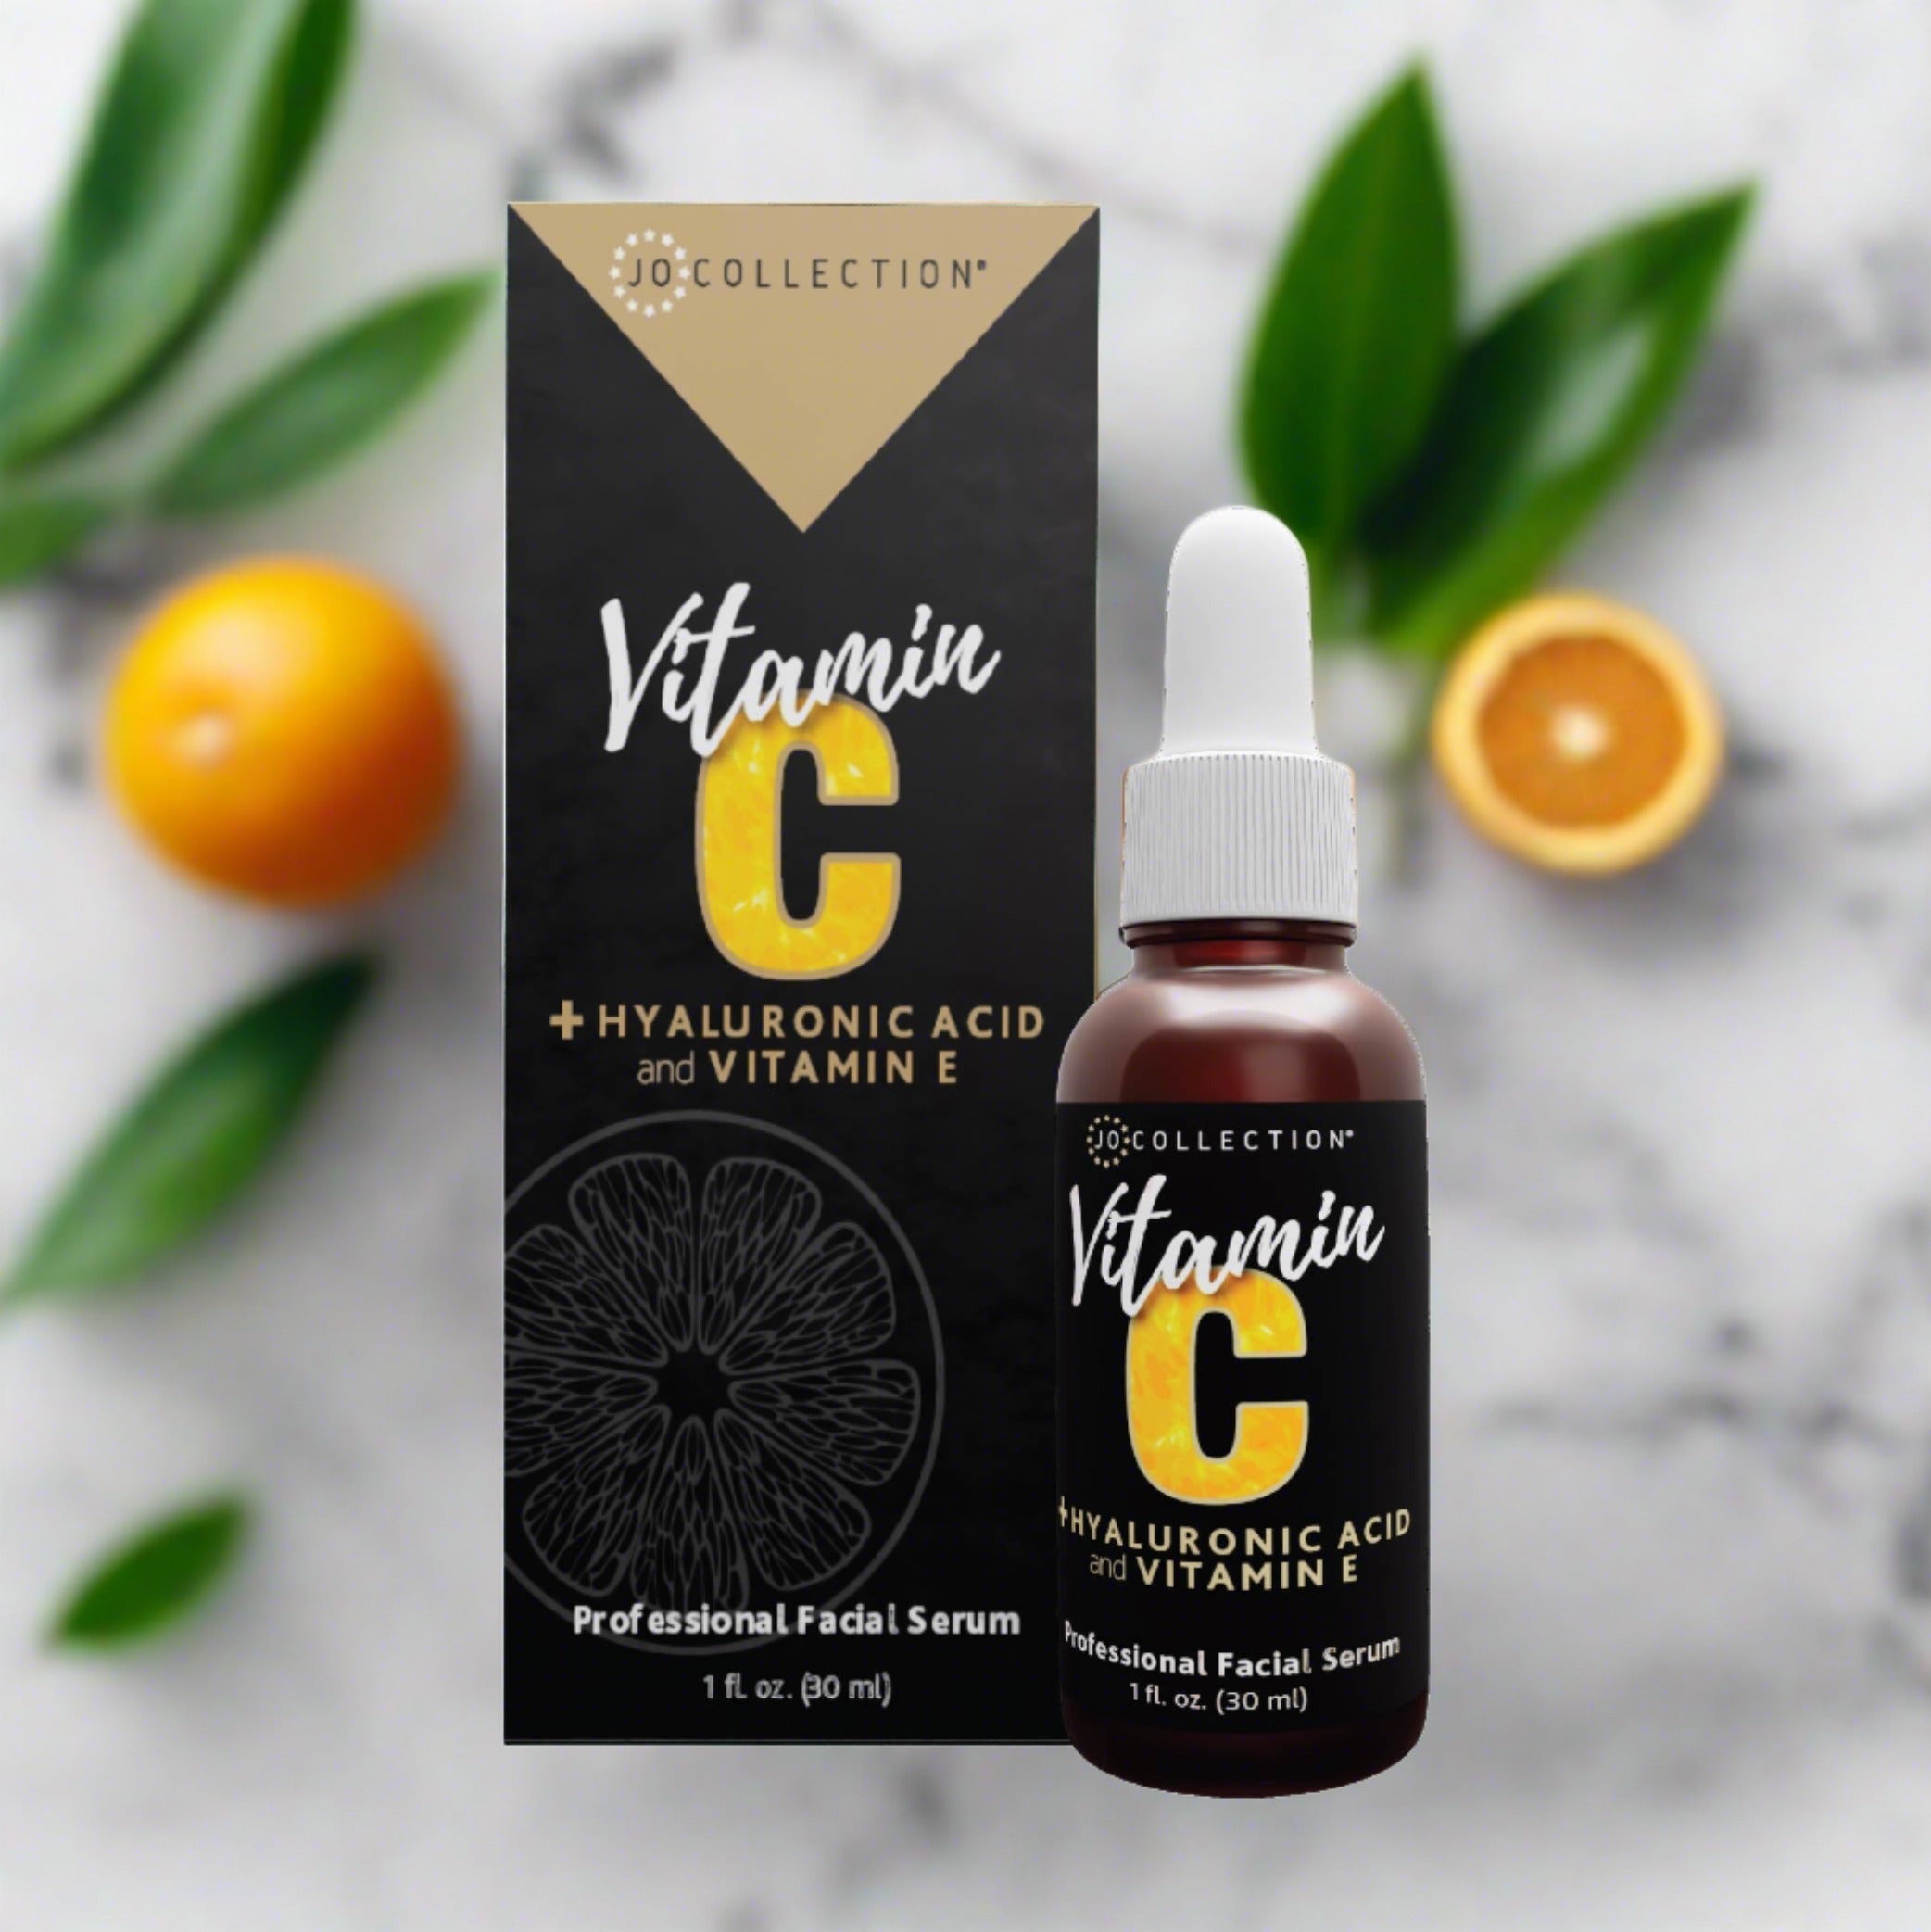 Caudalie Ladies Vinergetic C+ Vitamin C Energy Serum 1 oz Skin Care  3522930003489 - Jomashop